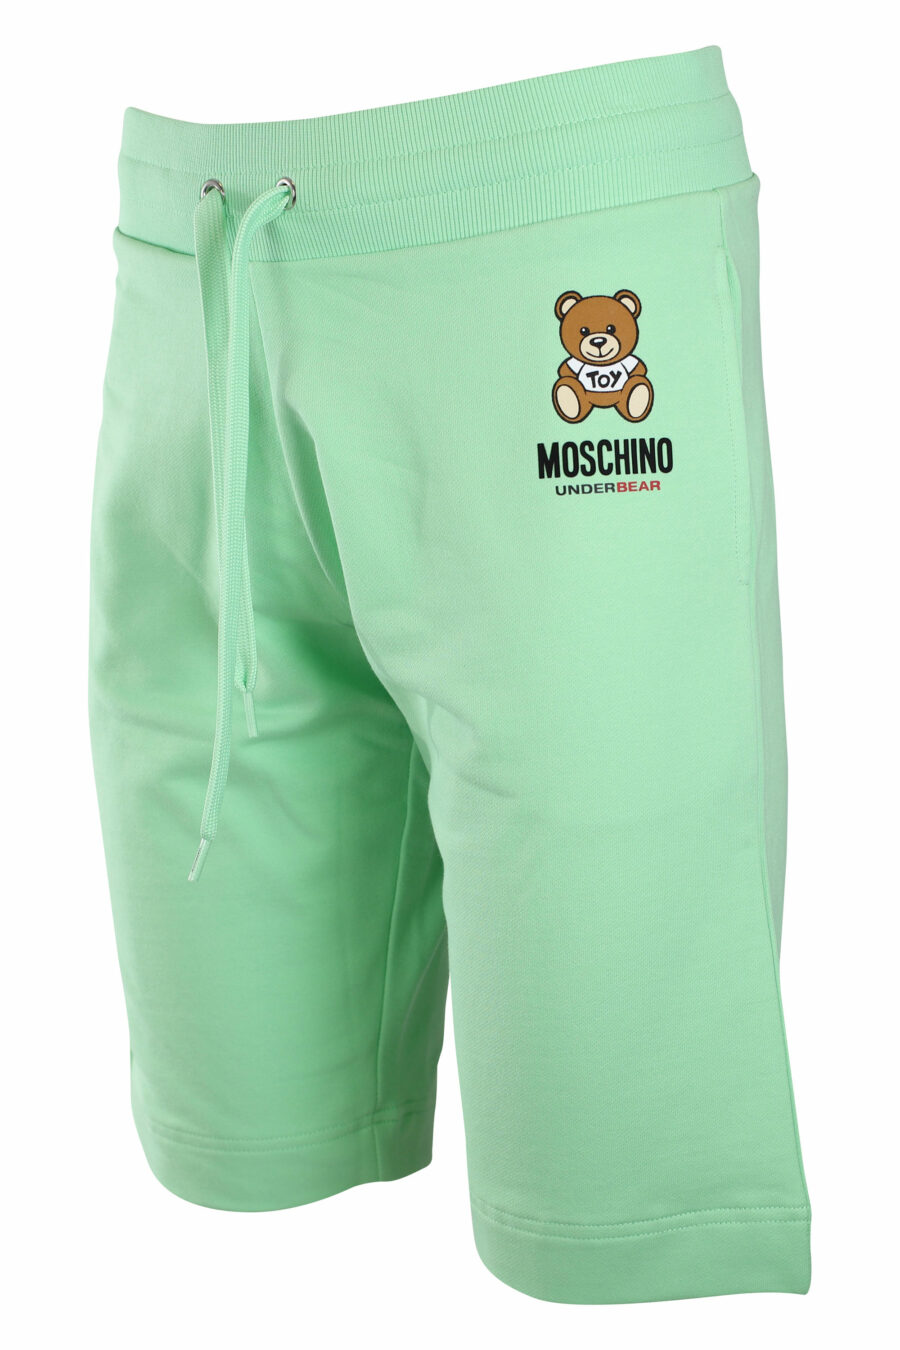 Pantalón de chándal corto verde menta con minilogo oso "underbear" - IMG 2219